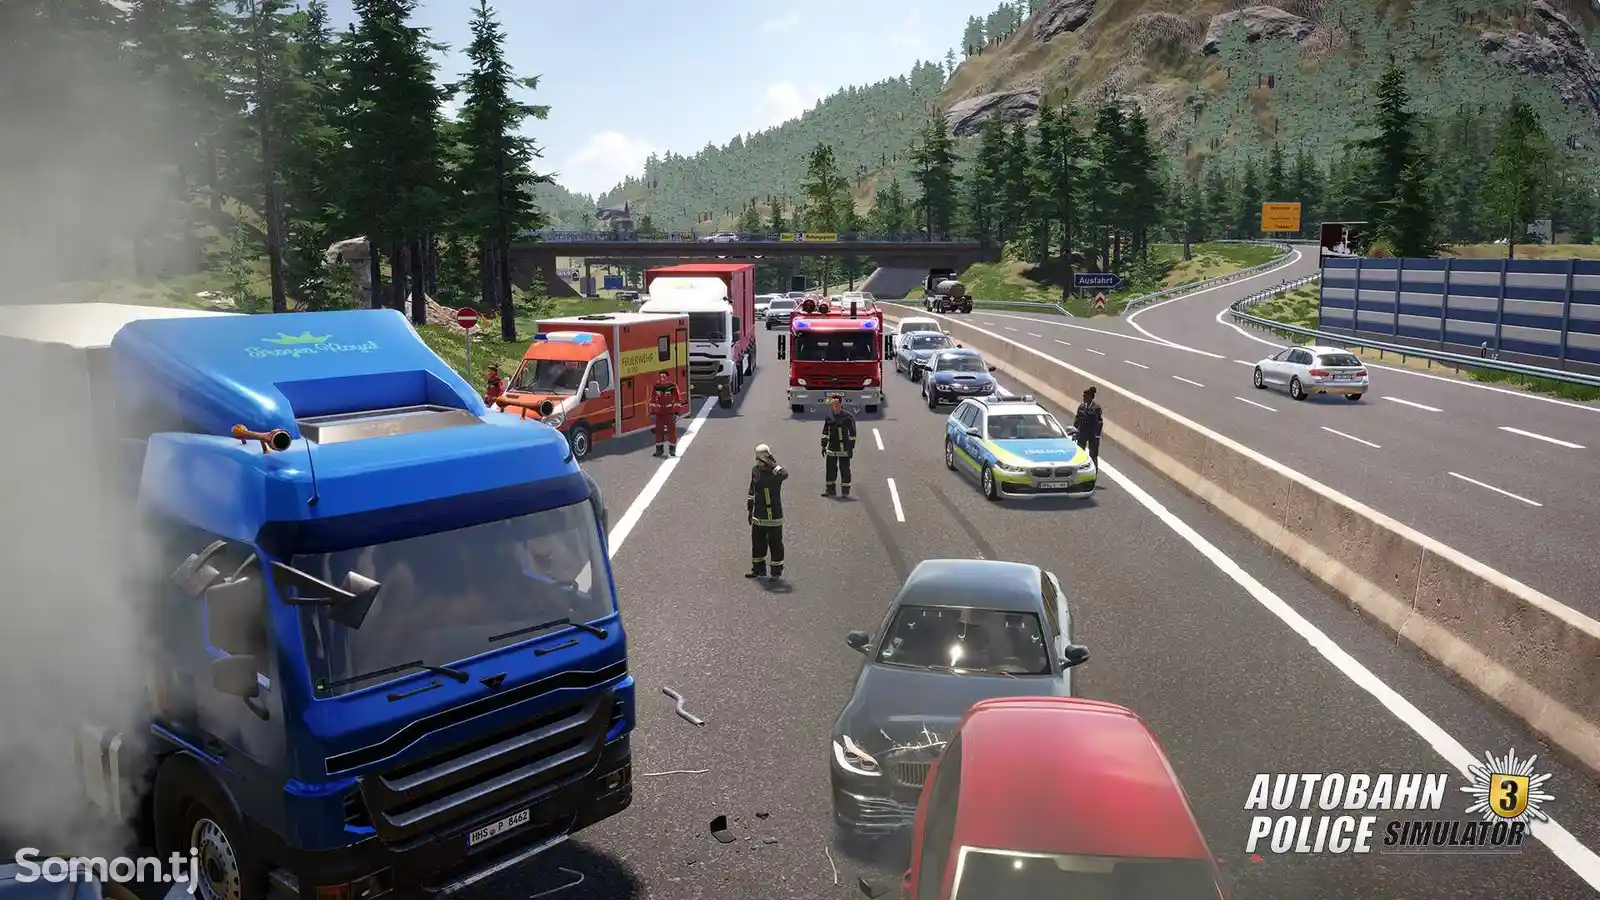 Игра Autobahn police simulator 3 для PS-4 / 5.05 / 6.72 / 7.02 / 7.55 / 9.00 /-3